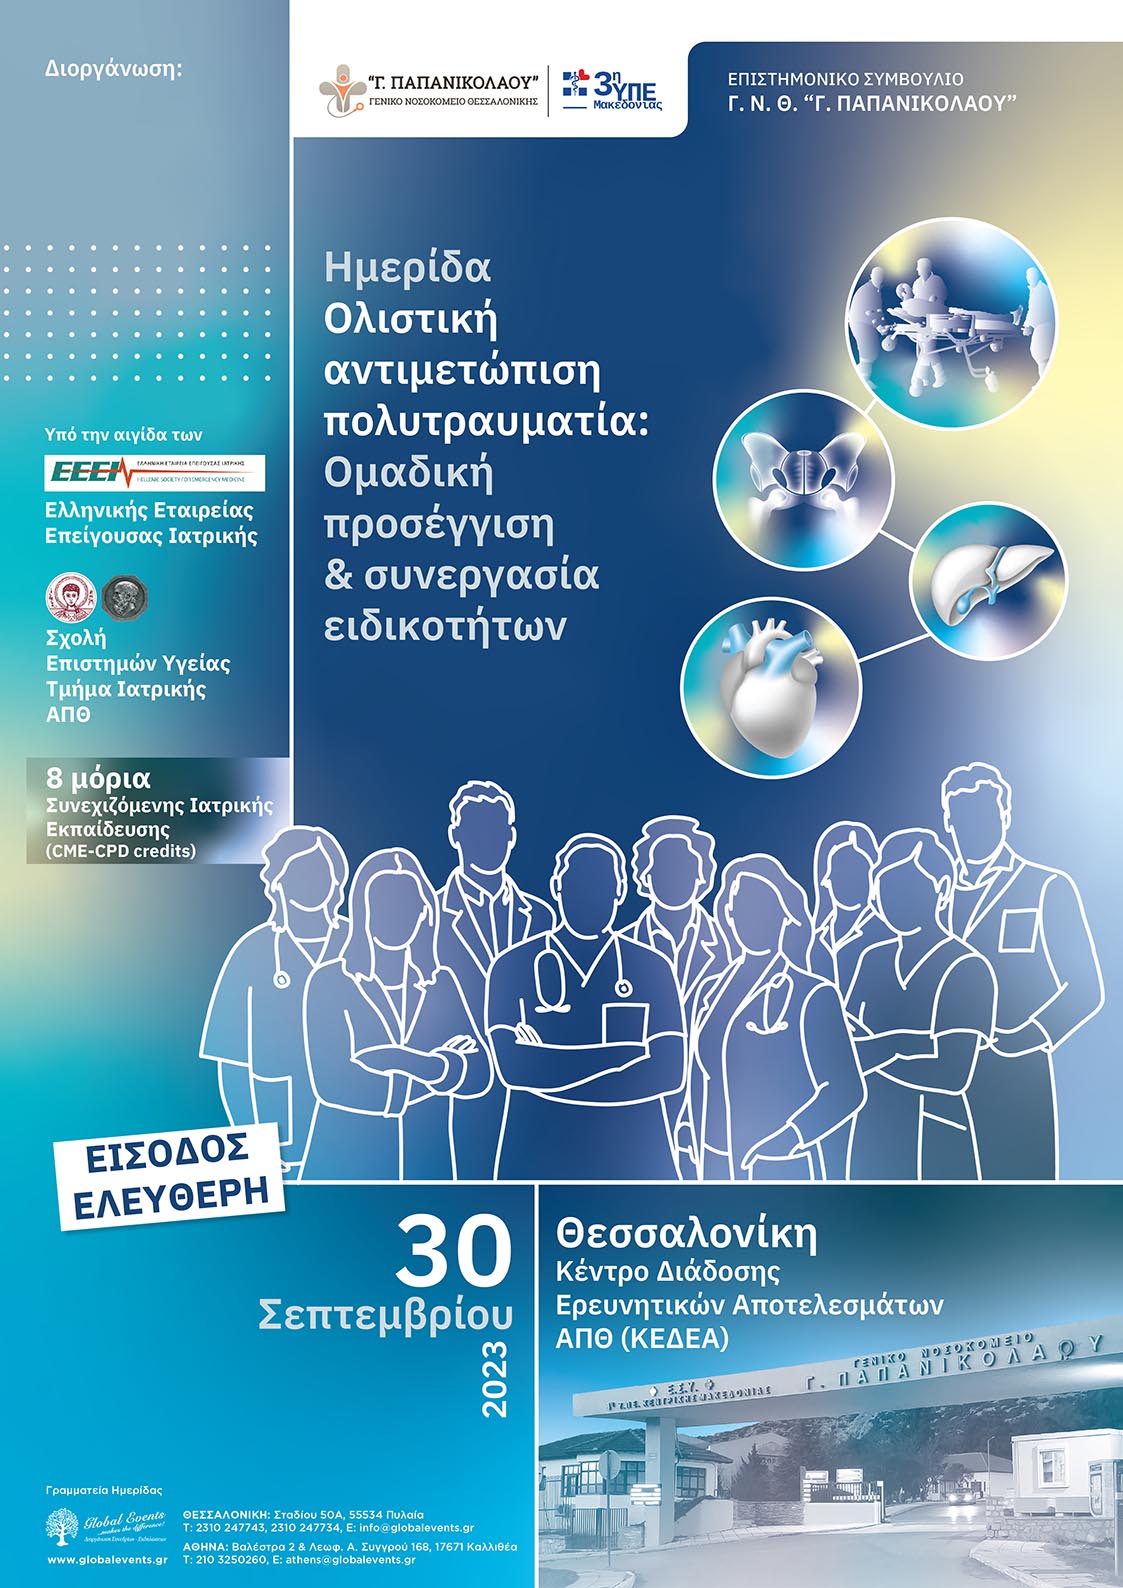 Hμερίδα Γ.Ν.Θ. “Γ. Παπανικολάου”: Ολιστική αντιμετώπιση πολυτραυματία: Ομαδική προσέγγιση & συνεργασία ειδικοτήτων, Θεσσαλονίκη, 30/9/2023